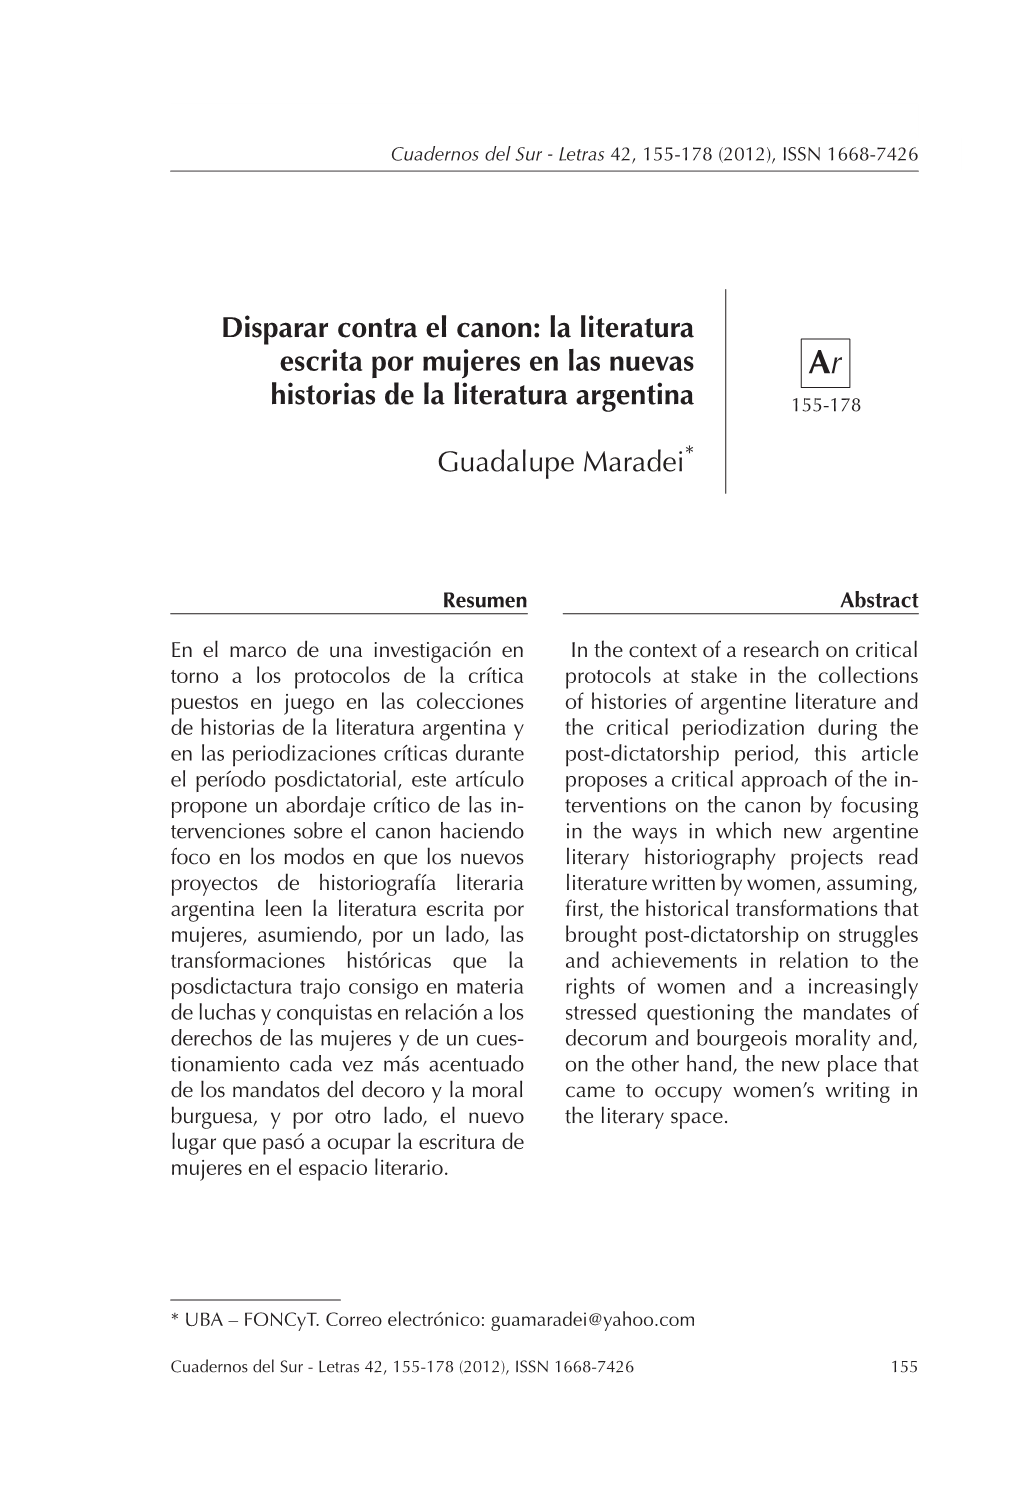 Disparar Contra El Canon: La Literatura Escrita Por Mujeres En Las Nuevas Ar Historias De La Literatura Argentina 155-178